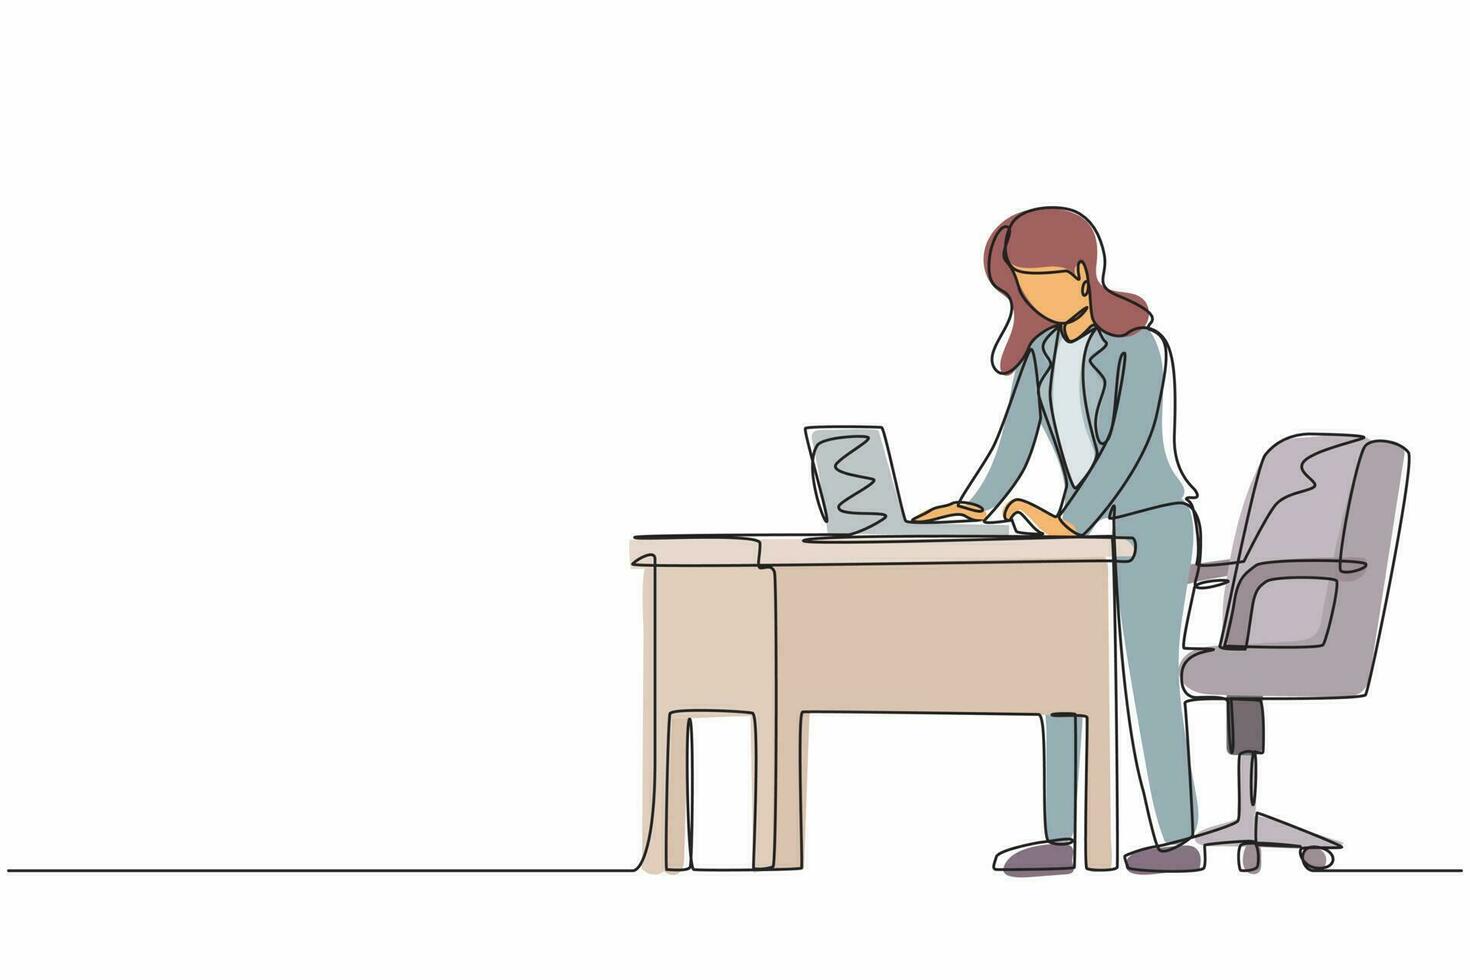 dipendente donna di disegno a linea continua singola che lavora su una postazione di lavoro ergonomica. mobili per ufficio con computer e laptop. femmina in piedi sul poggiapiedi dietro la scrivania. vettore di disegno grafico a una linea